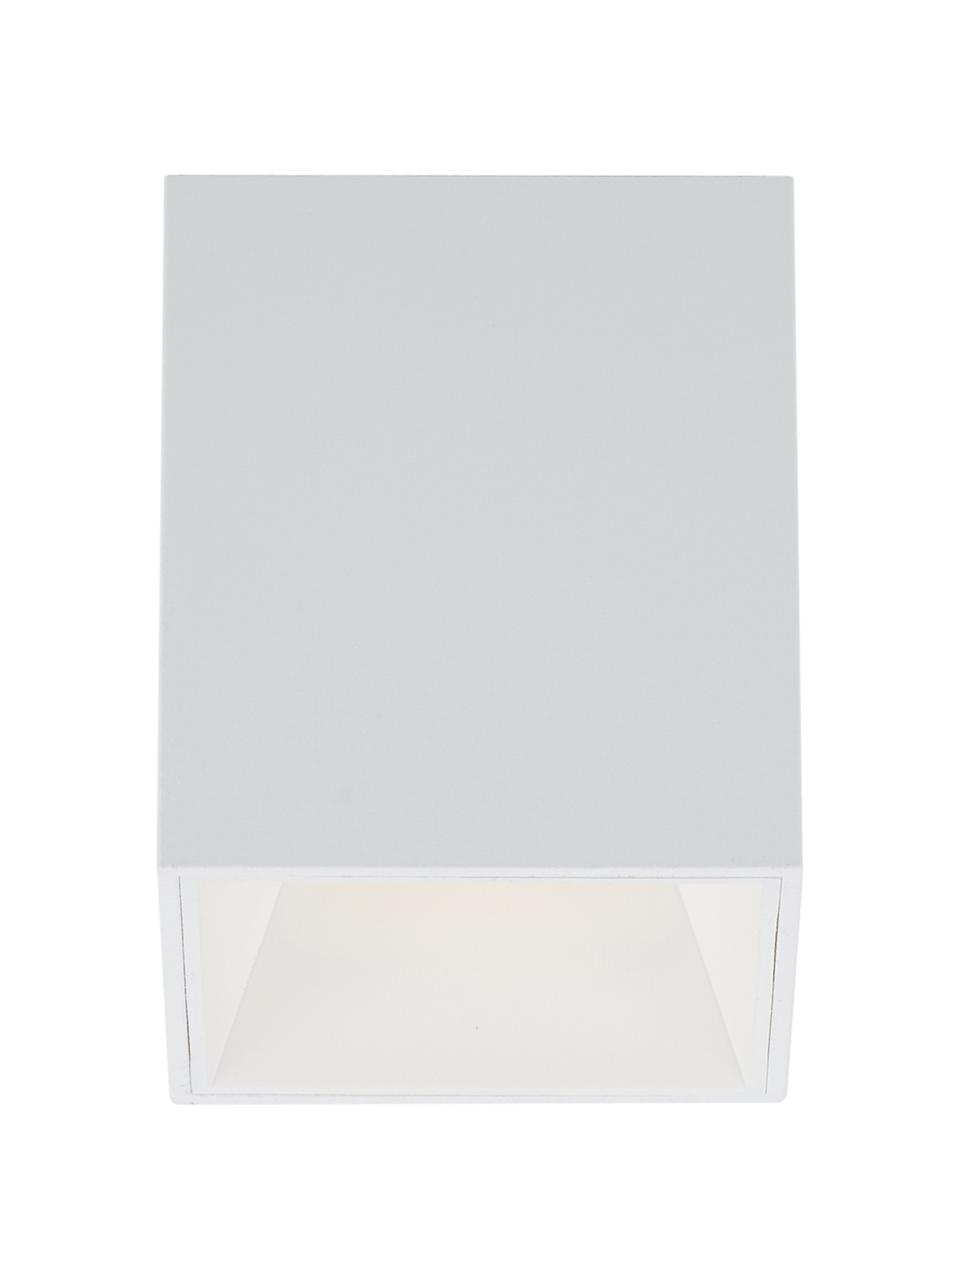 LED-Deckenspot Marty in Weiß, Lampenschirm: Metall, pulverbeschichtet, Weiß, matt, B 10 x H 12 cm